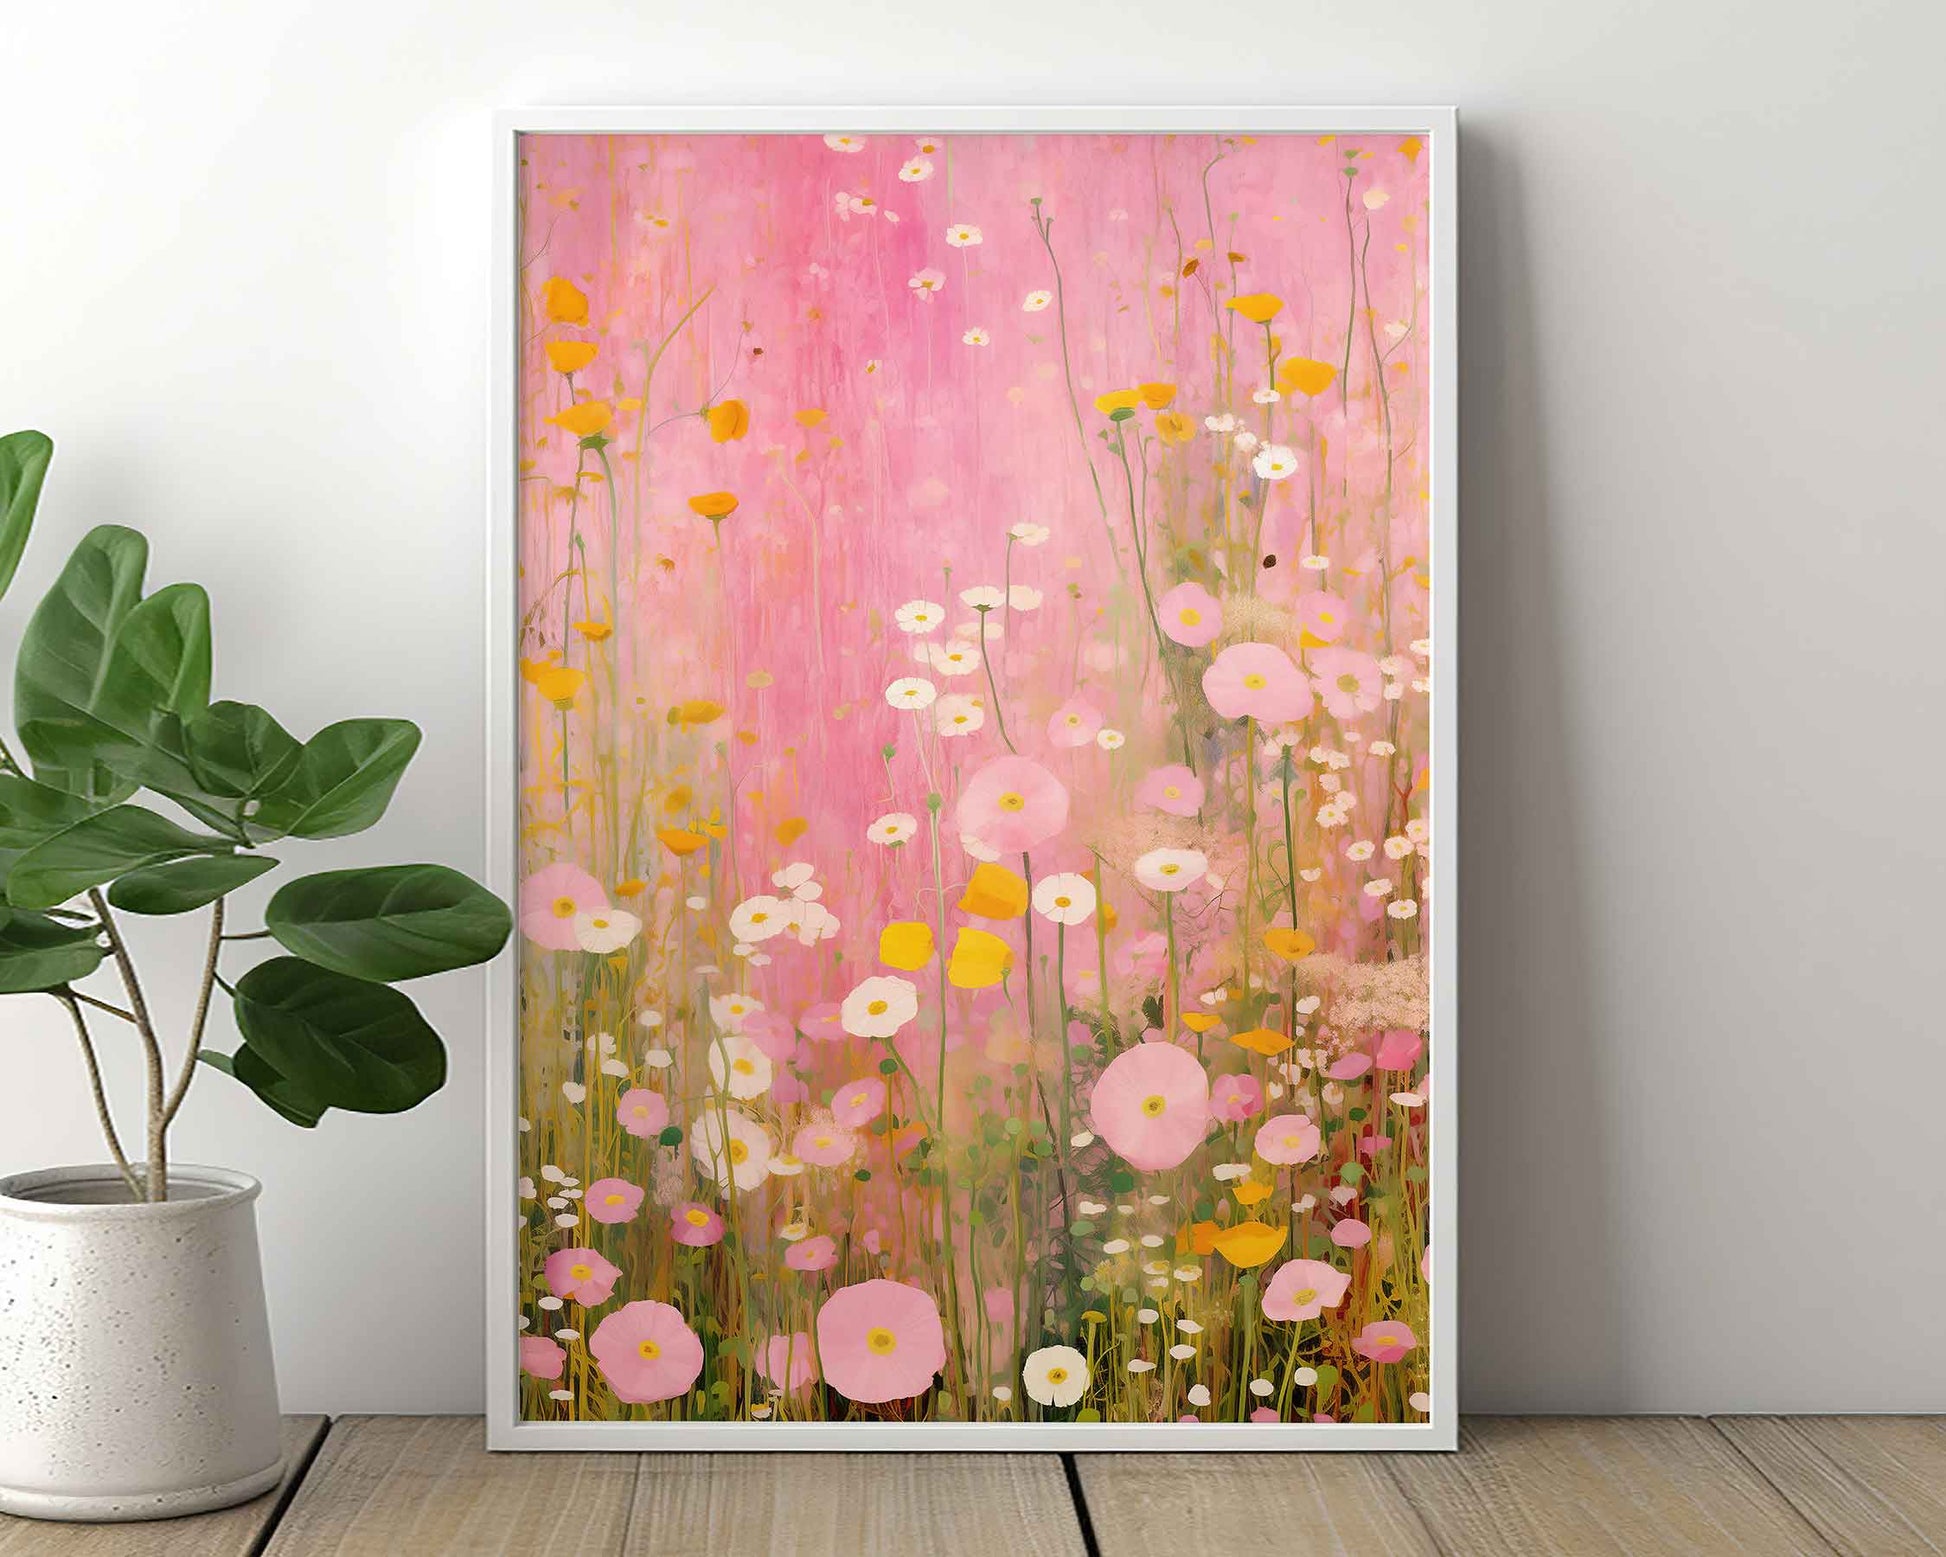 Framed Image of Gustav Klimt Style Pink Flowers Wall Art Print Poster